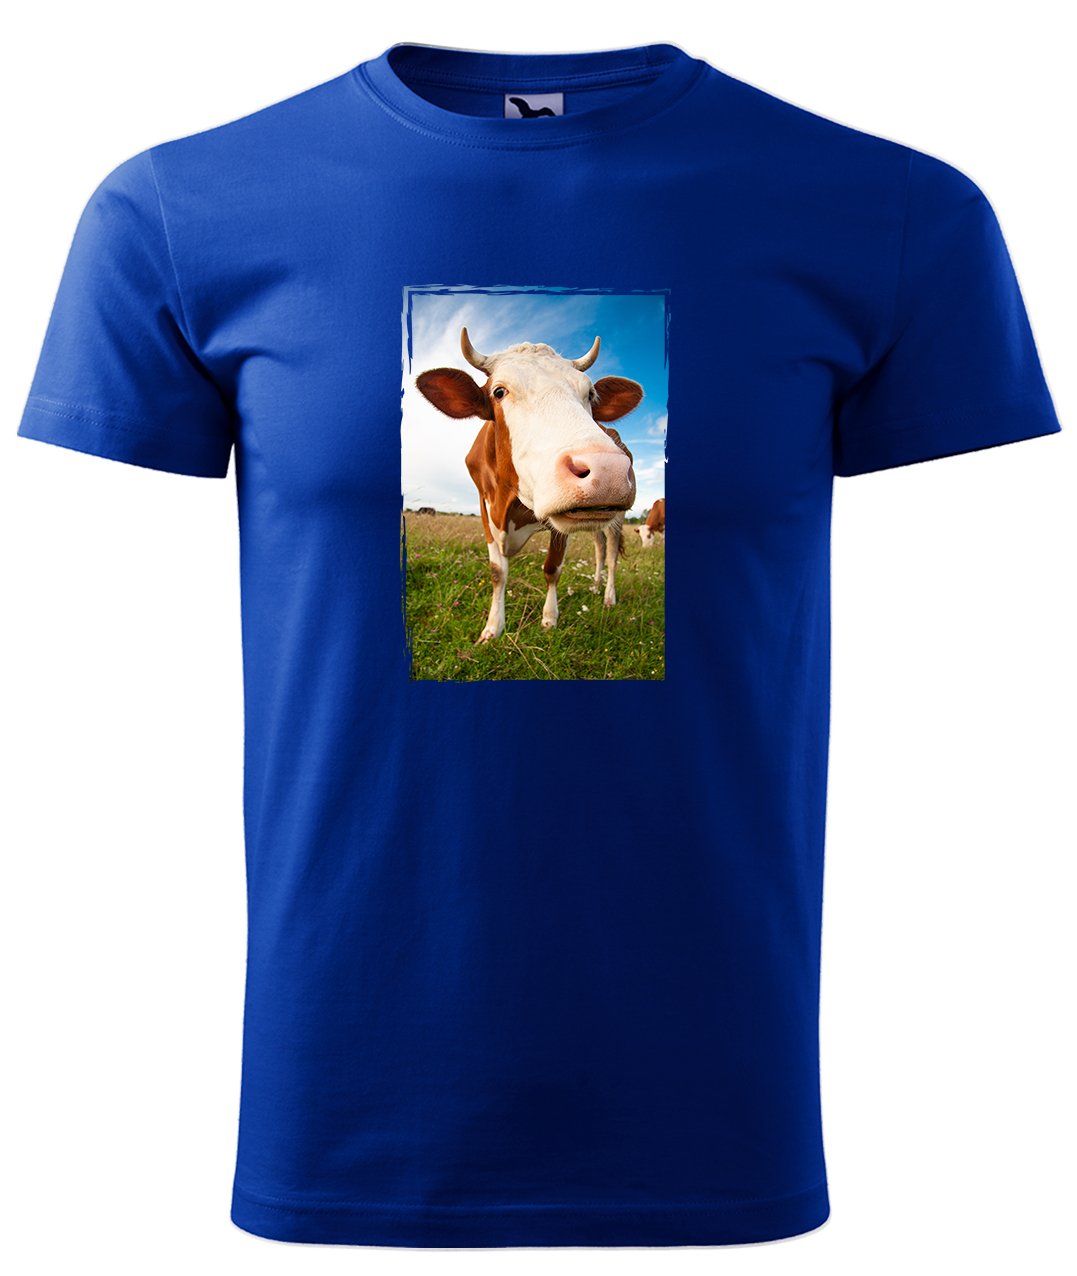 Dětské tričko s krávou - Na pastvě Velikost: 8 let / 134 cm, Barva: Královská modrá (05), Délka rukávu: Krátký rukáv